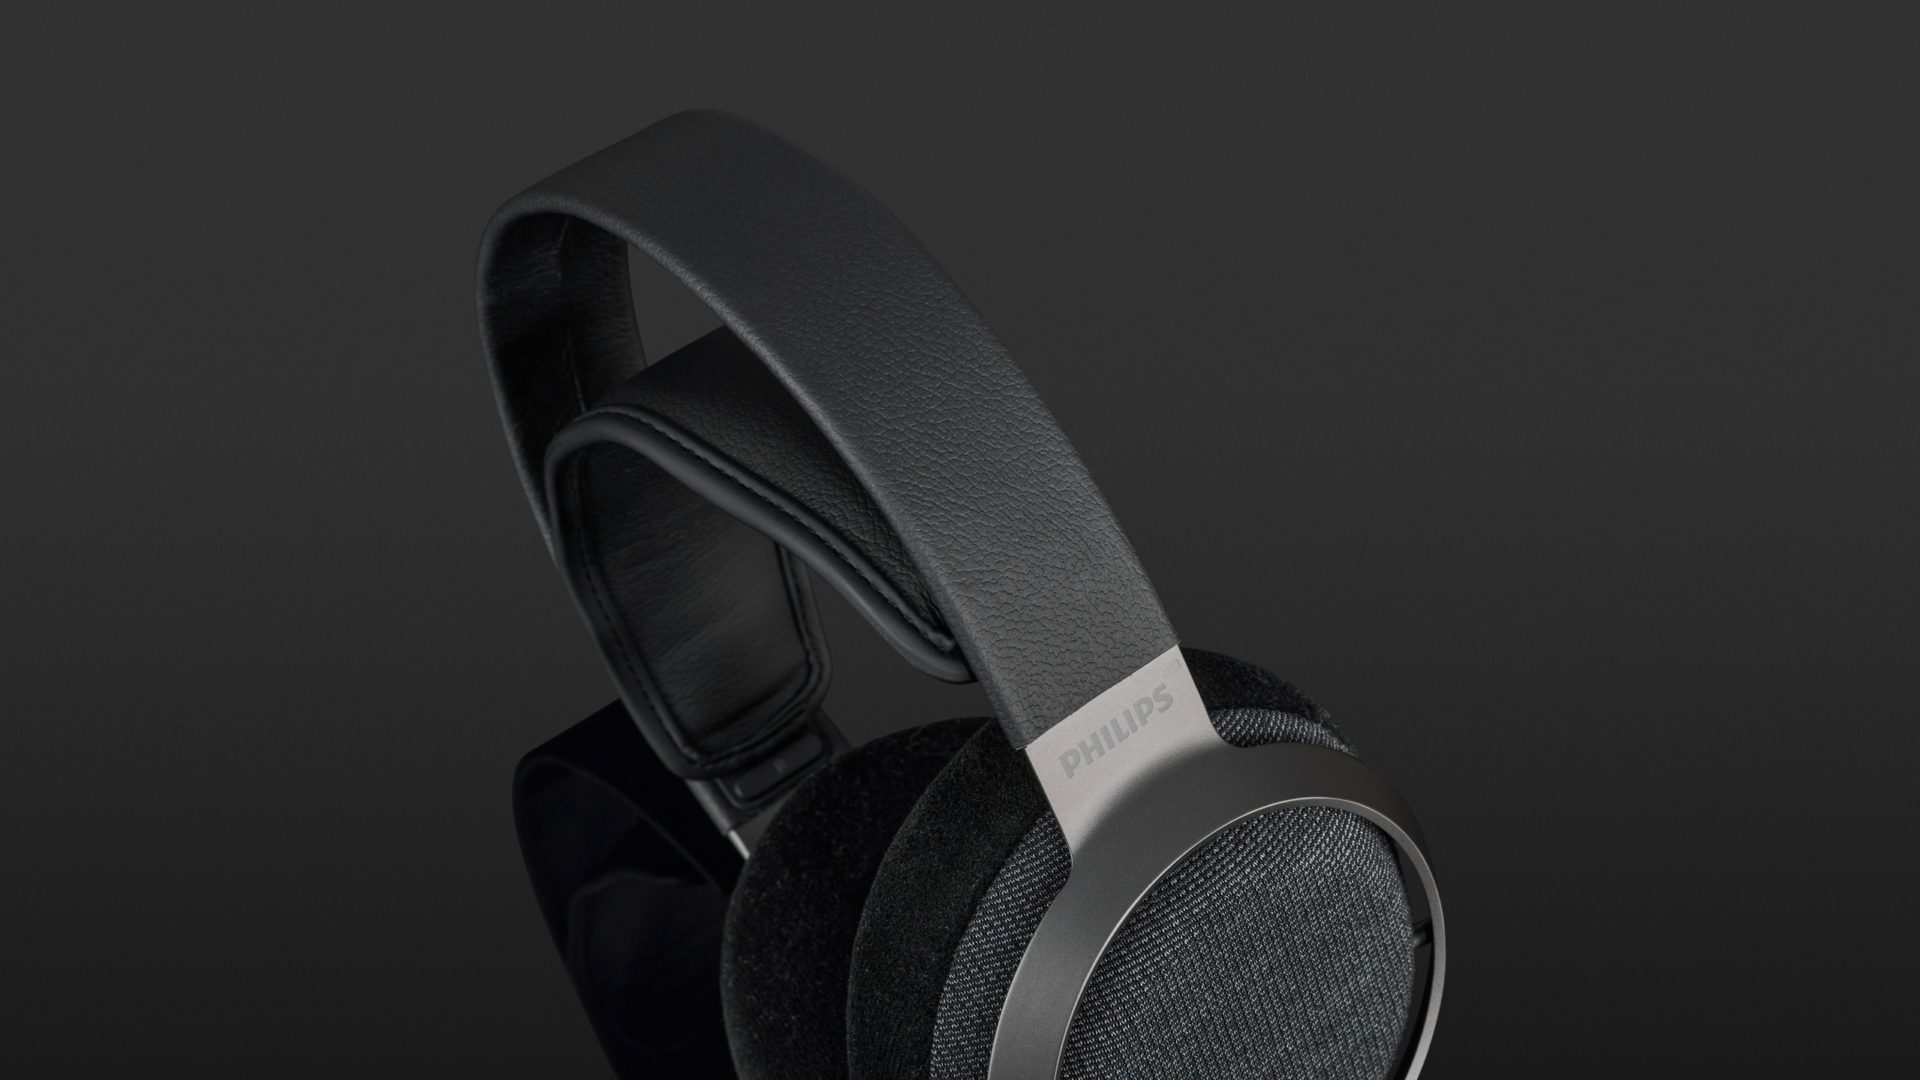 Philips Fidelio X3 Headphones Review